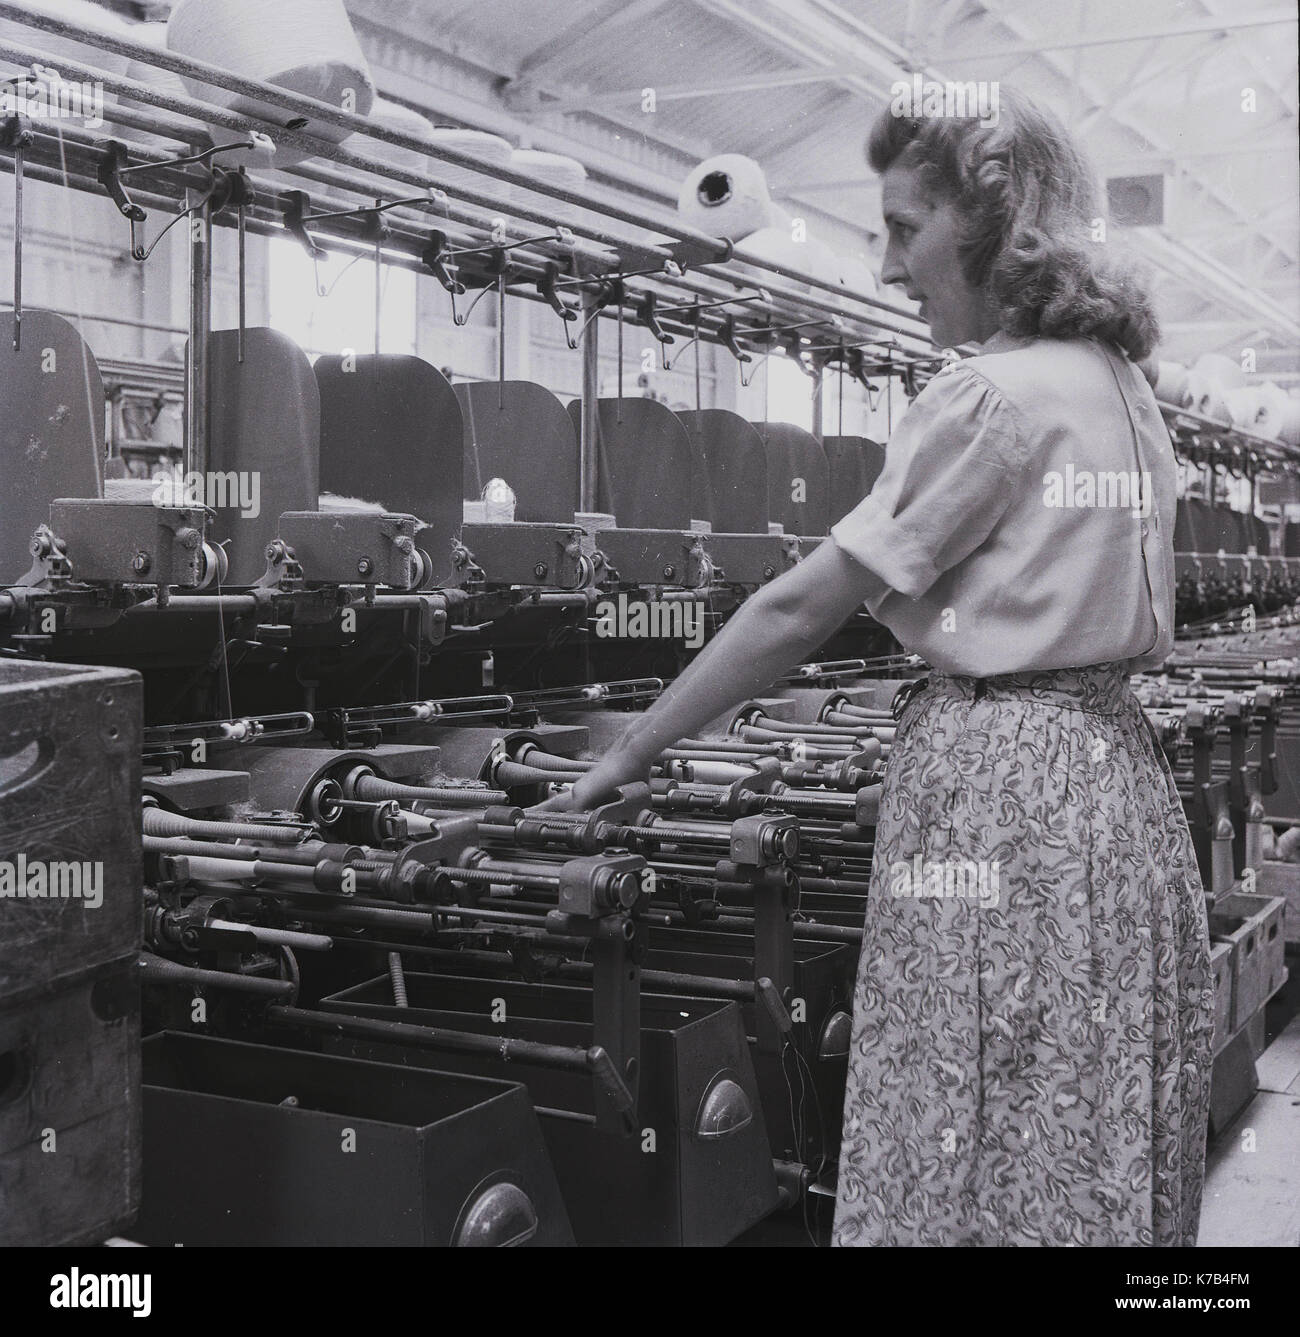 Années 1950, historique, une femme irlandaise travaillant dans une usine de textile, surveillant un certain nombre de métiers mécaniques mécanisés pour tisser des linges, Irlande du Nord. Banque D'Images